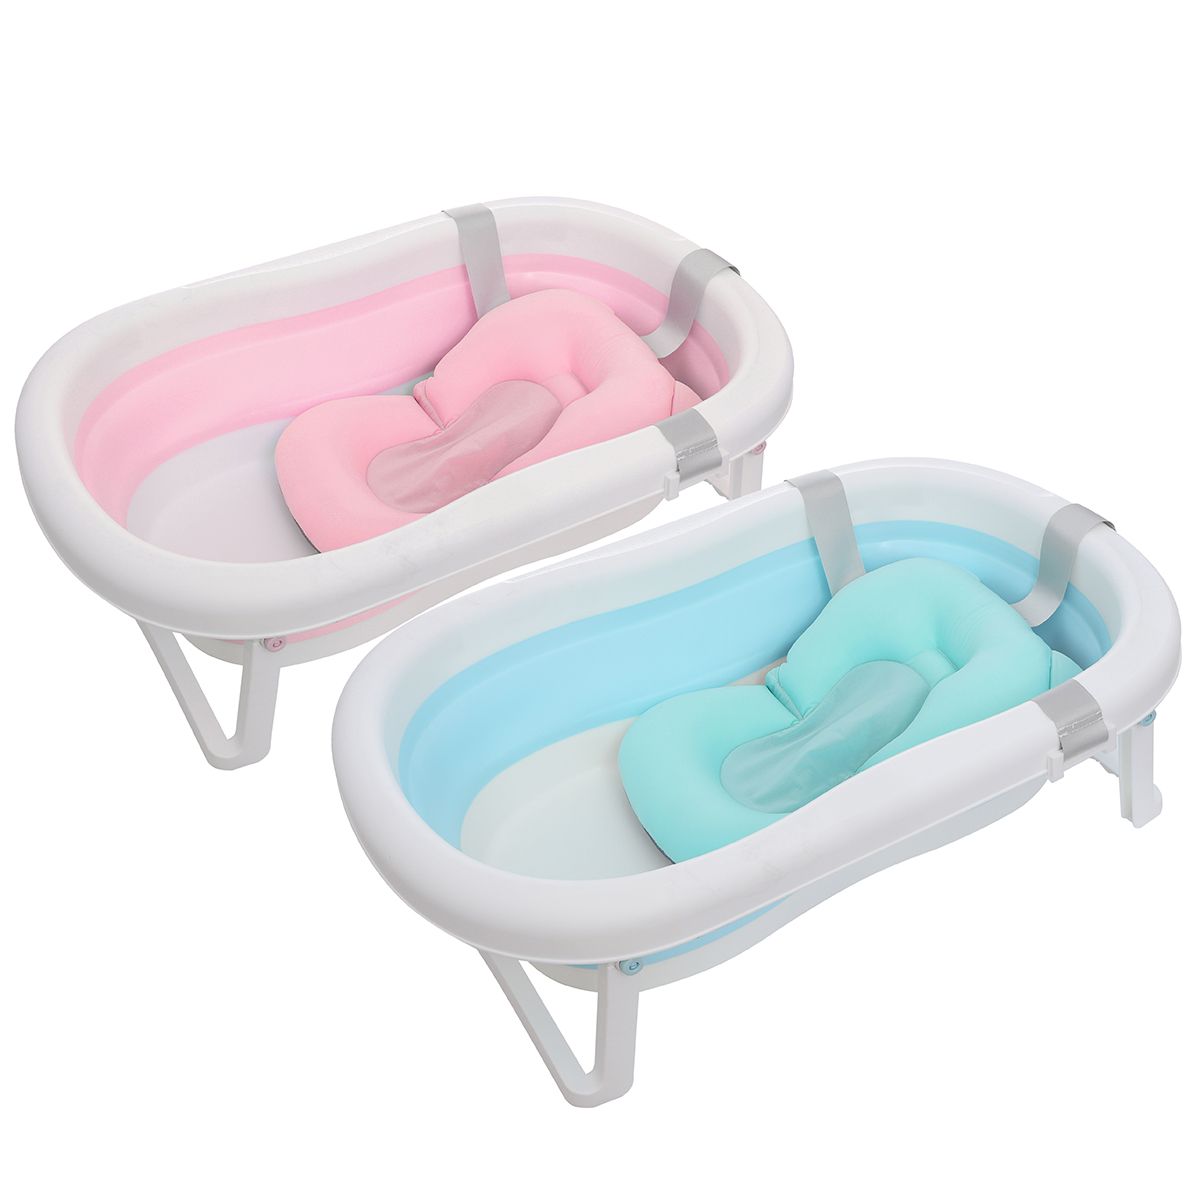 Baby-Bath-Tub-Foldable-Shower-Newborn-Bathtub-Safe-Kids-Bath-With-Cushion-1728929